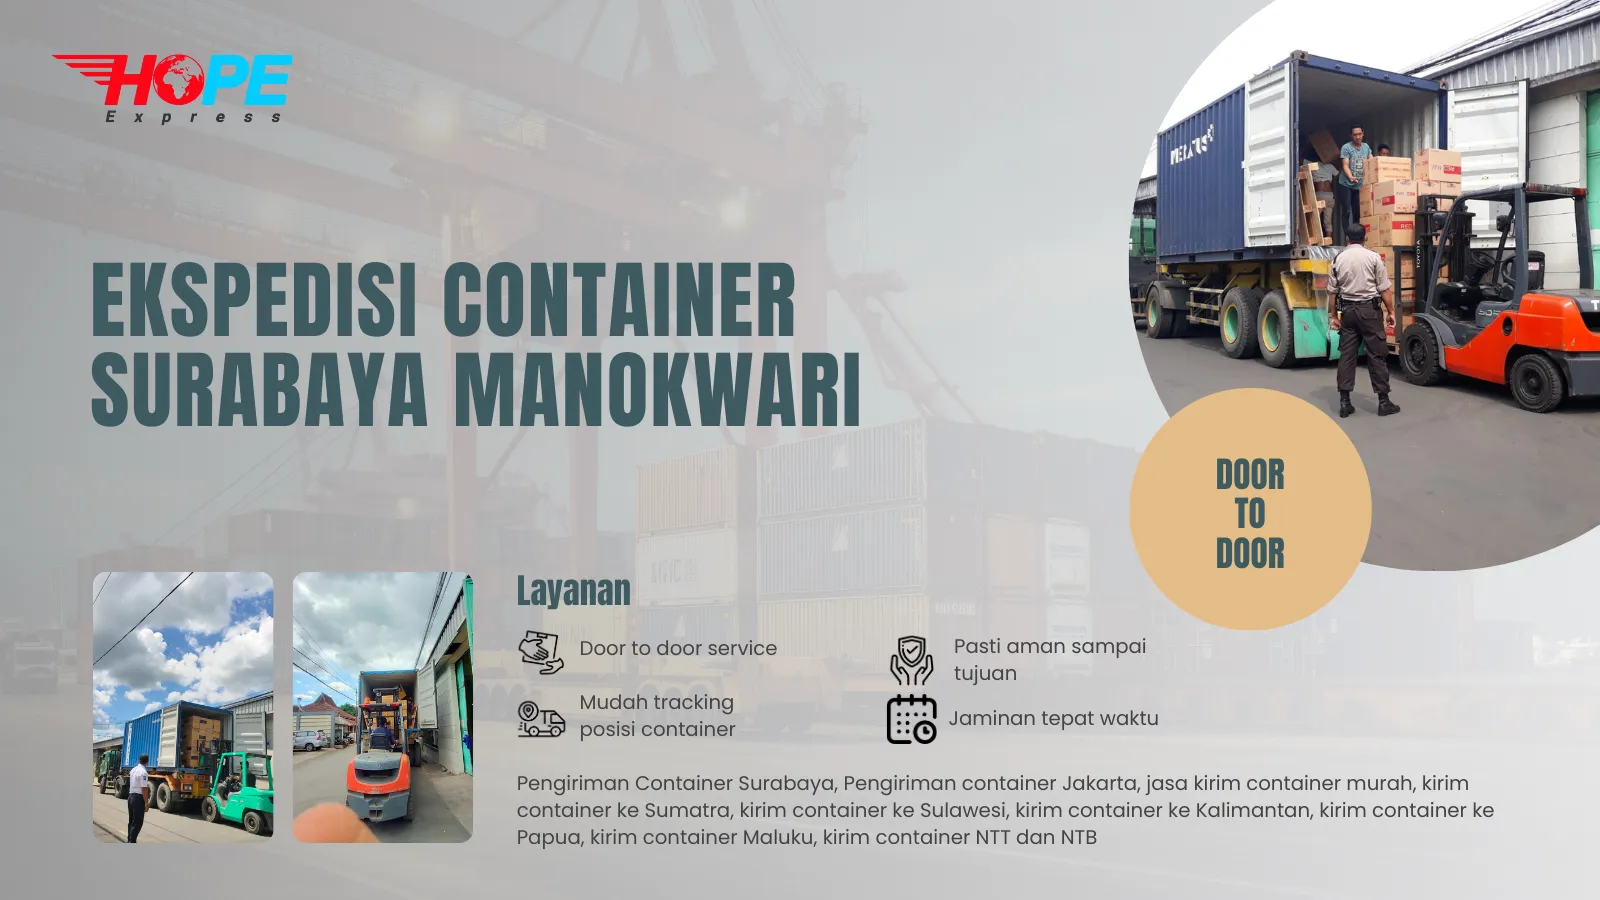 Ekspedisi Container Surabaya Manokwari